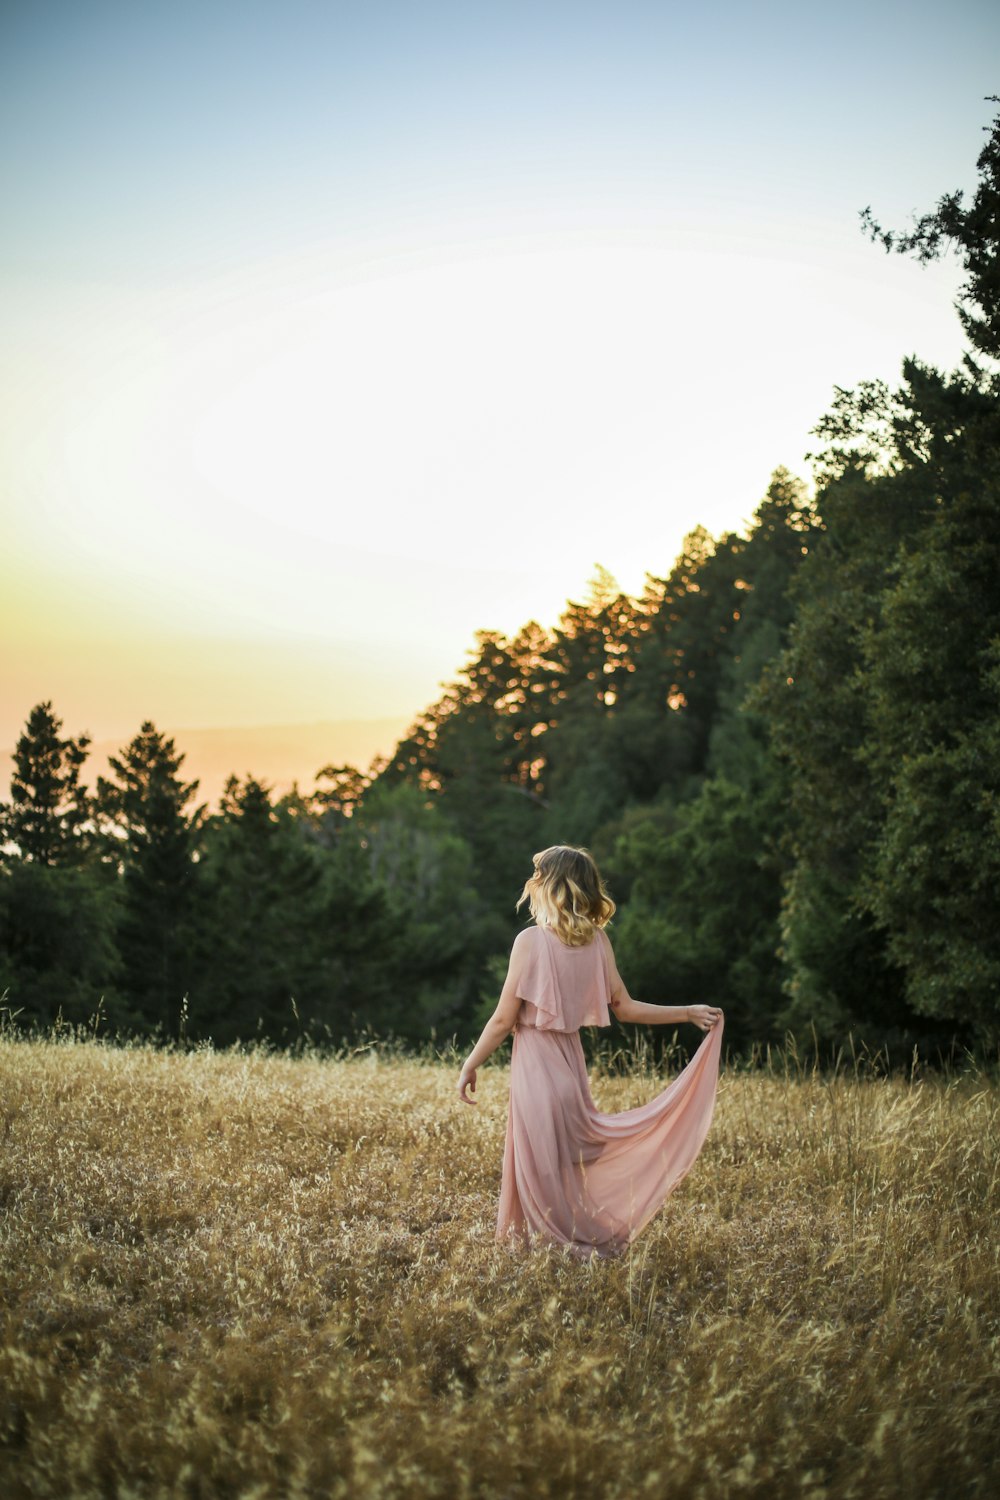 昼間、茶色の芝生の上に立つピンクのドレスを着た女性